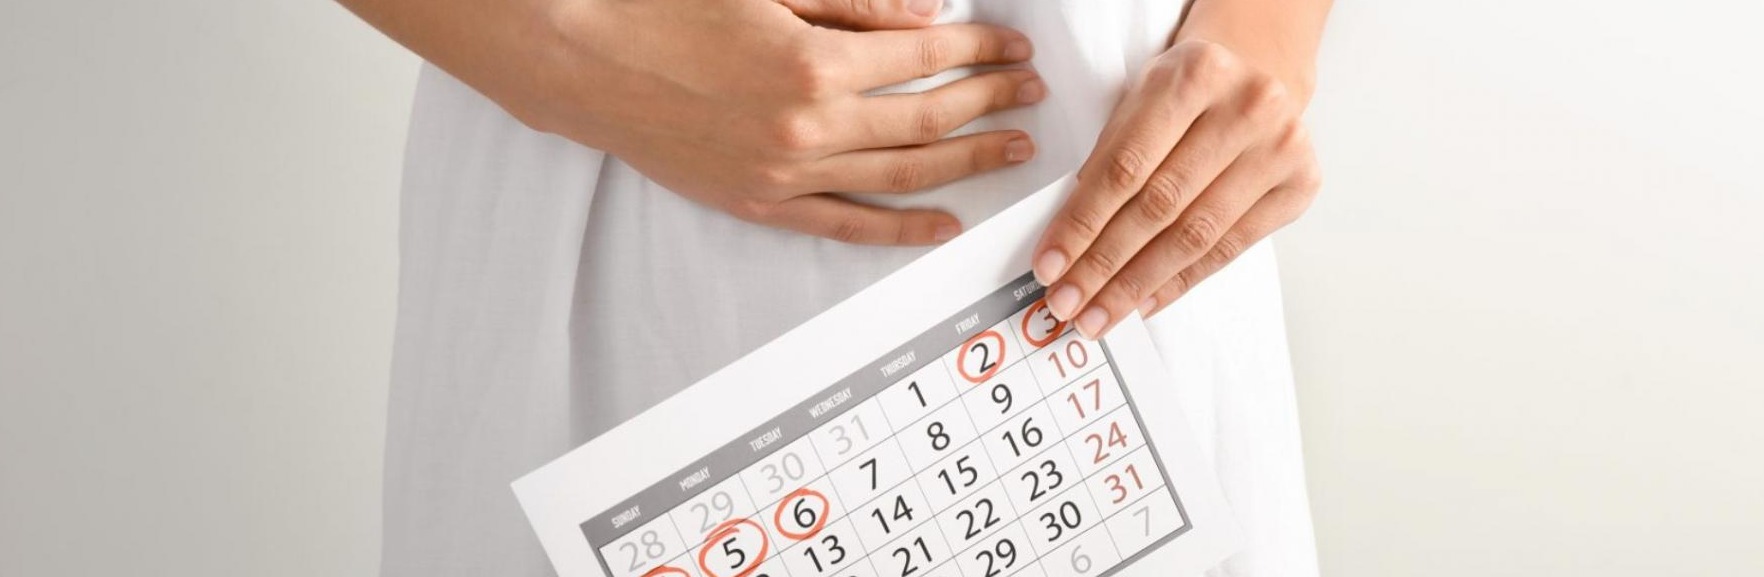 العلاقة بين خلل الهرمونات وتأخر الدورة الشهرية وتأخر الانجاب